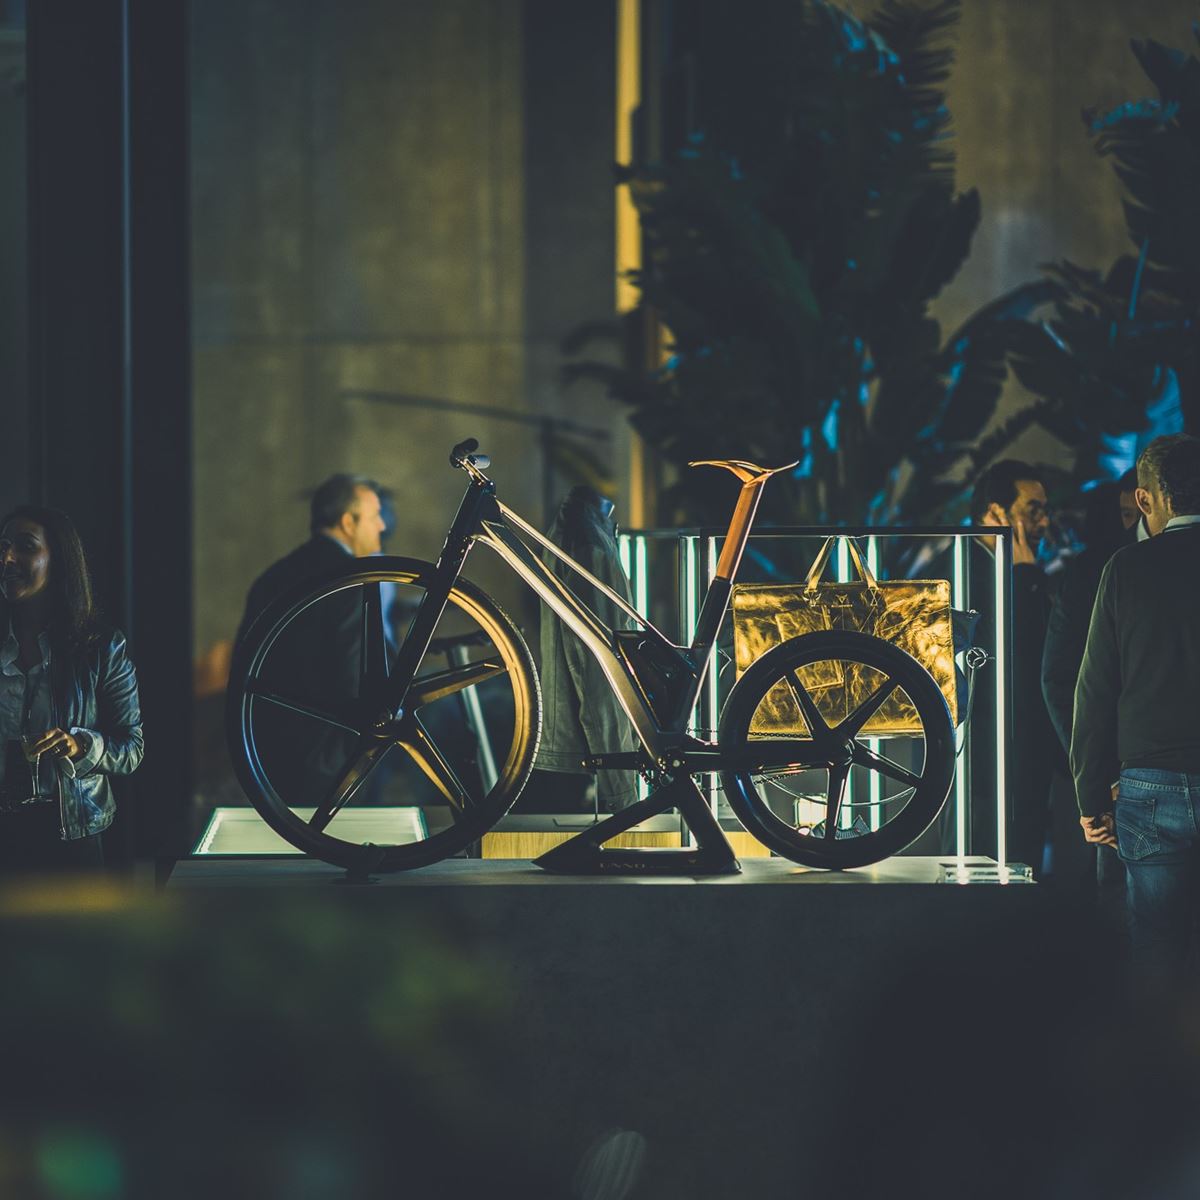 Cupra e-bike pieghevole by Unno